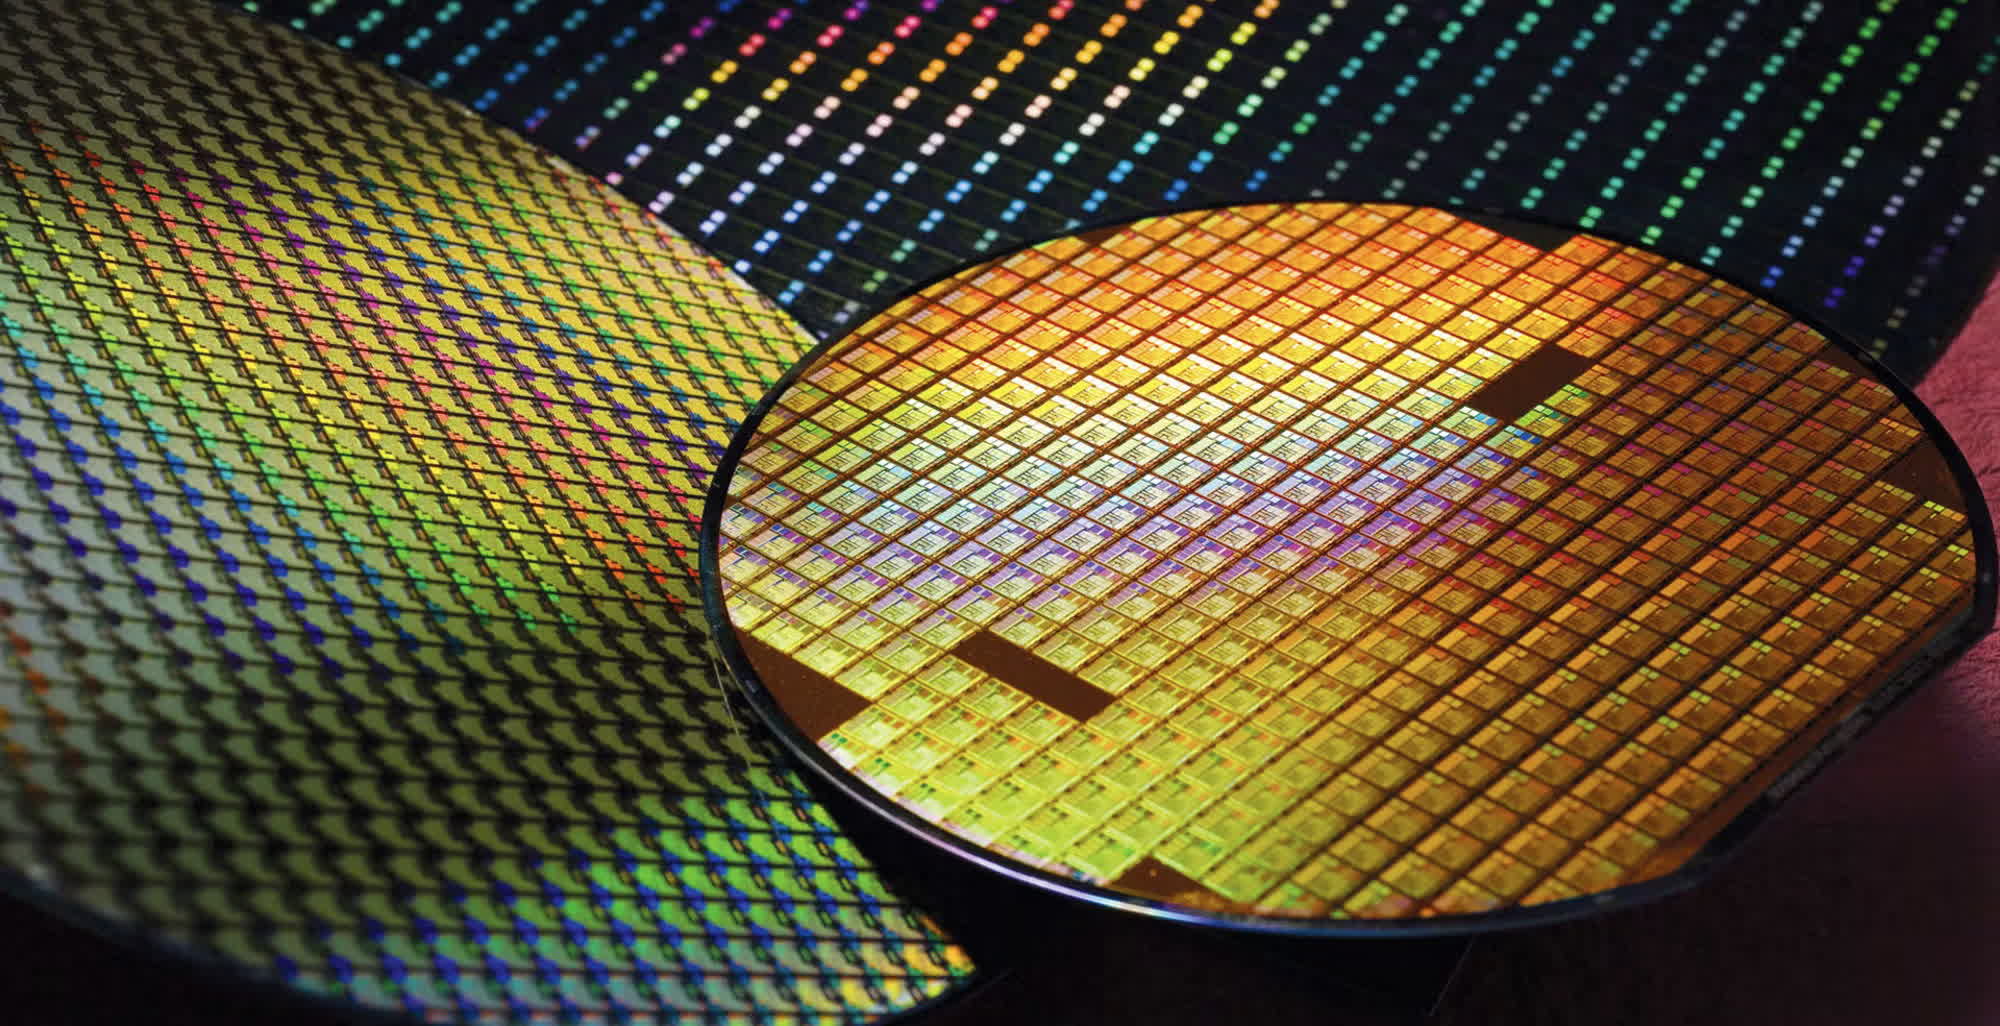 Nvidia recurre a Intel Foundry Services para ampliar la capacidad de GPU y chips de IA